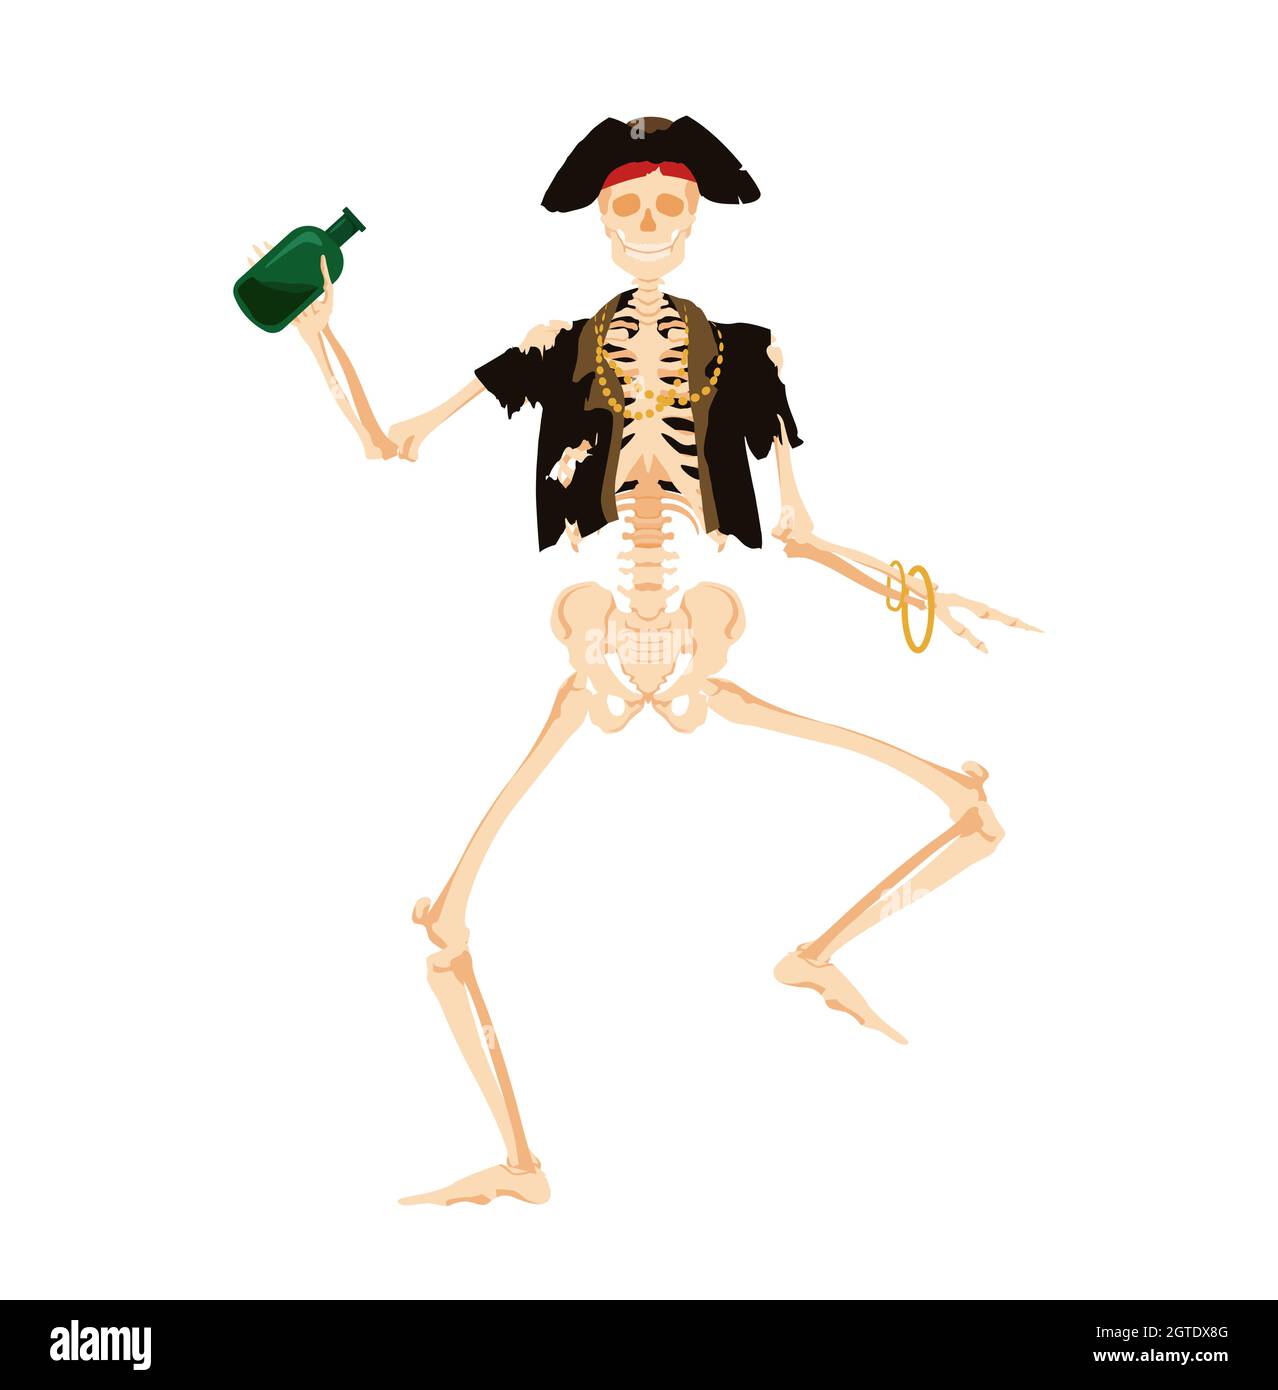 Pirate de squelette dansant avec bouteille. Le Corsair mort dans les vêtements délabés danse joyeusement Illustration de Vecteur